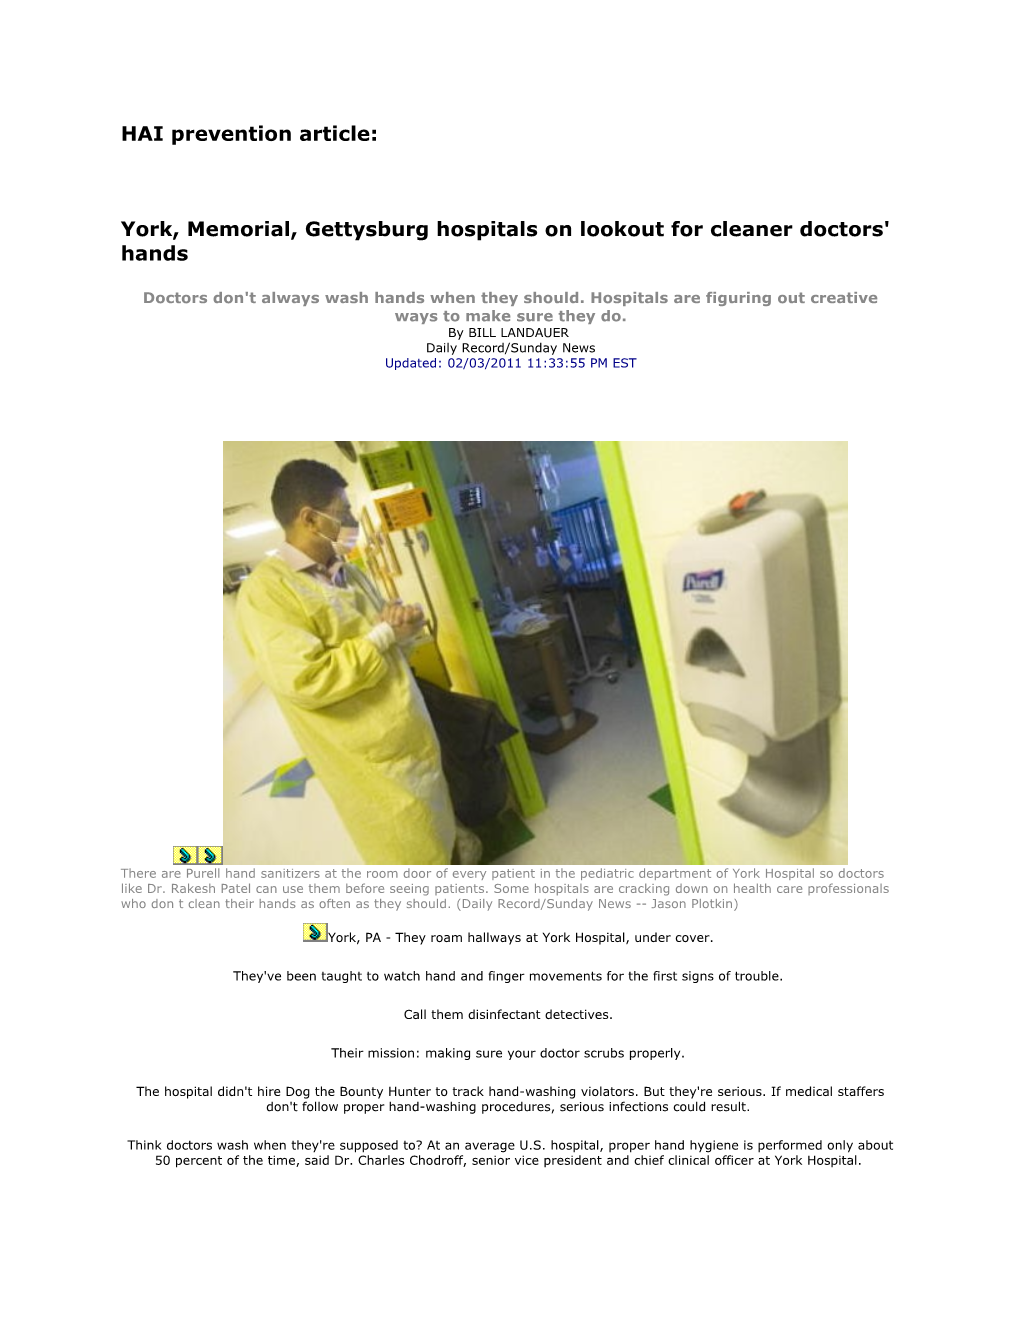 York, Memorial, Gettysburg Hospitals on Lookout for Cleaner Doctors' Hands